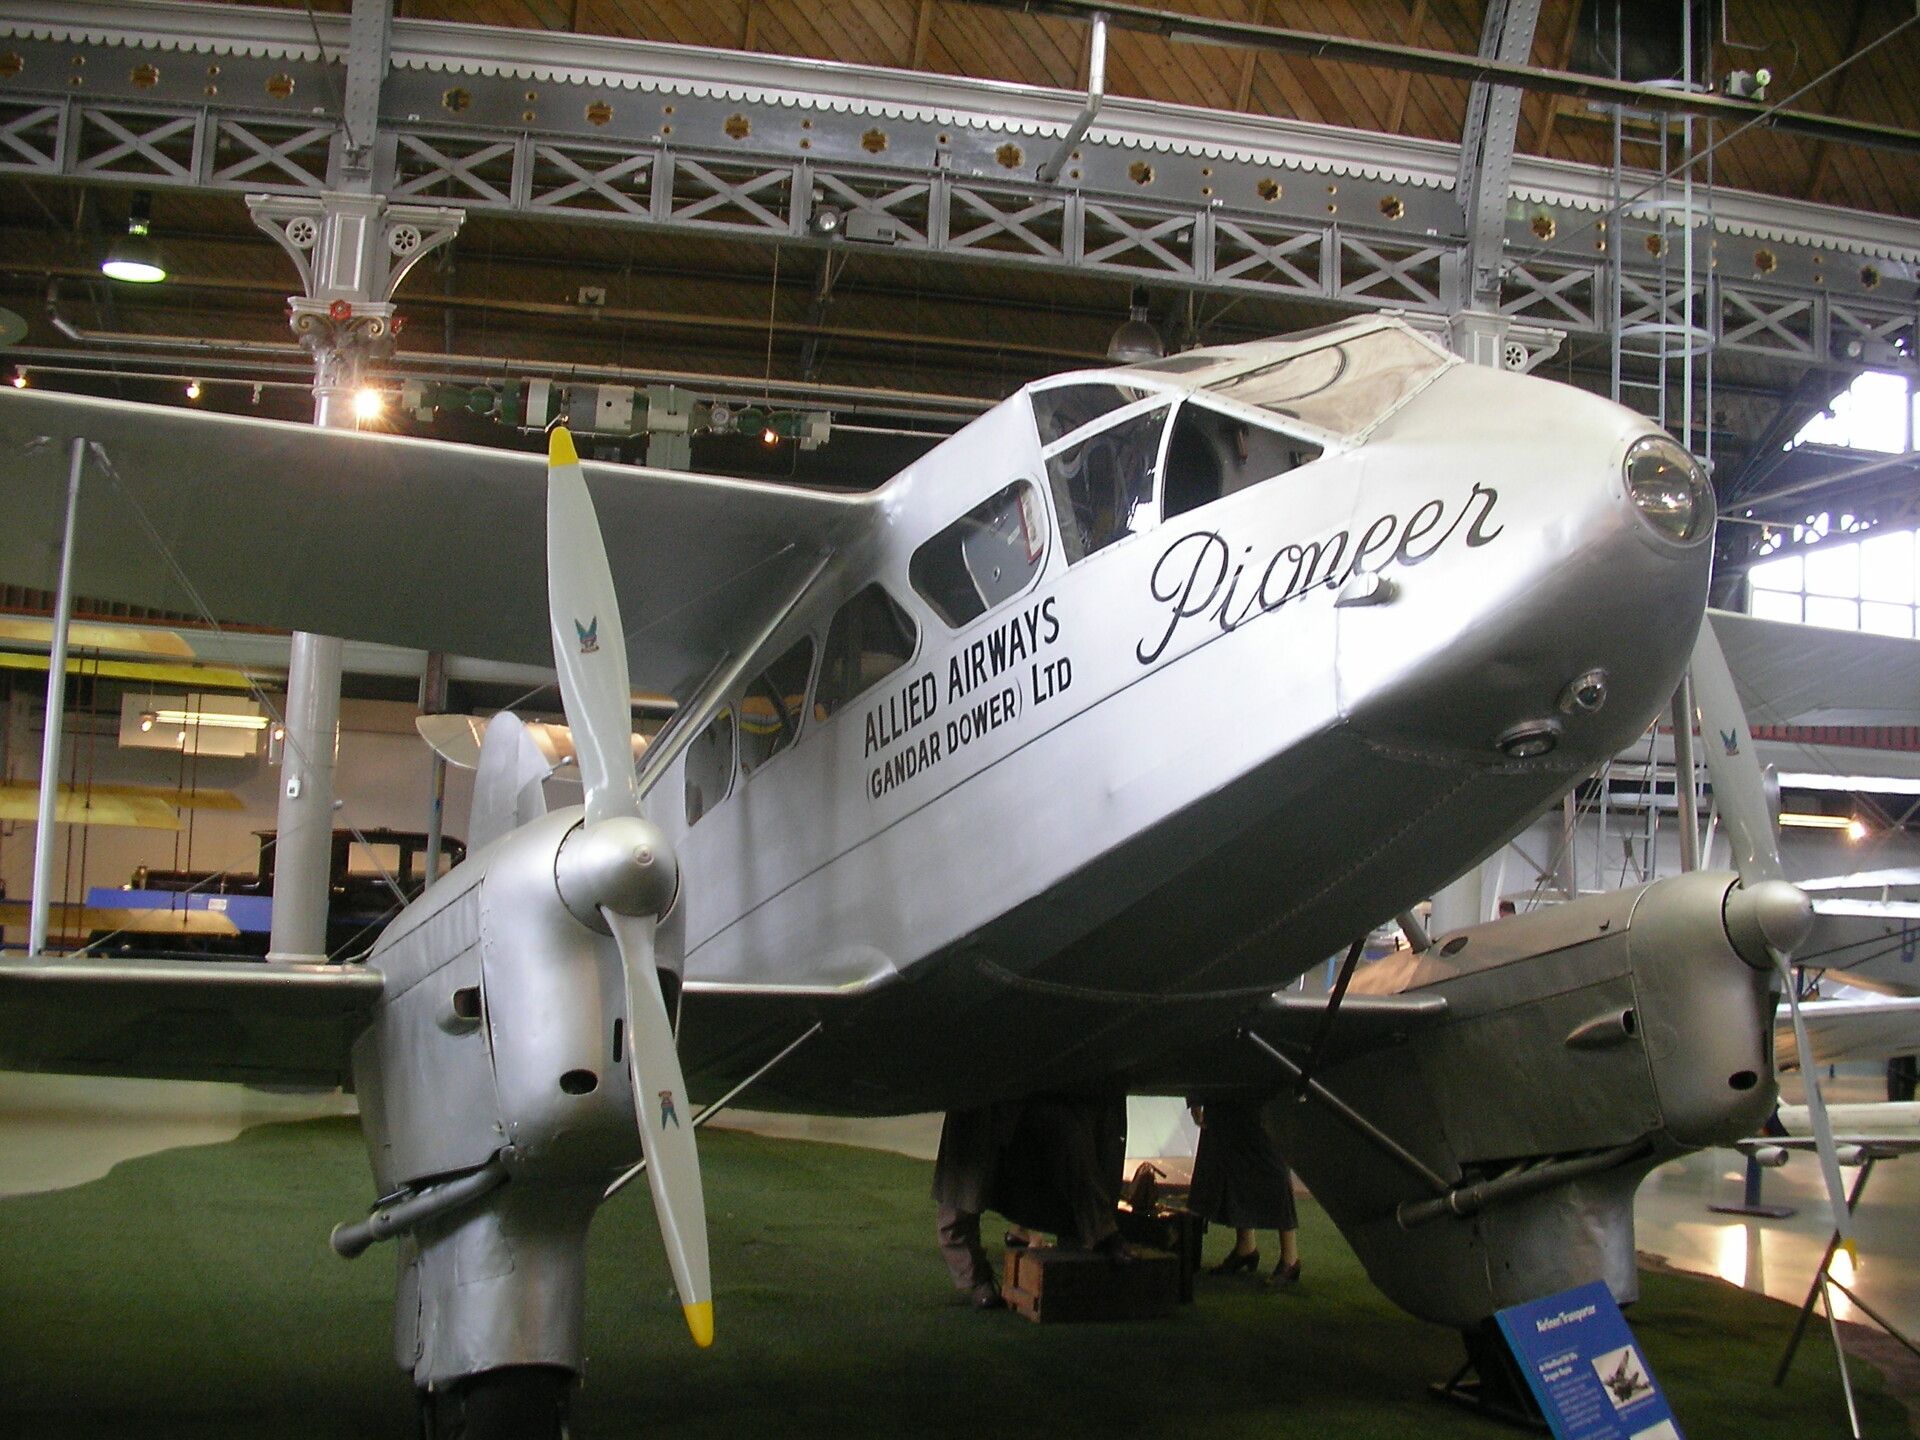 Allied Airways De Havilland Dragon Rapide.